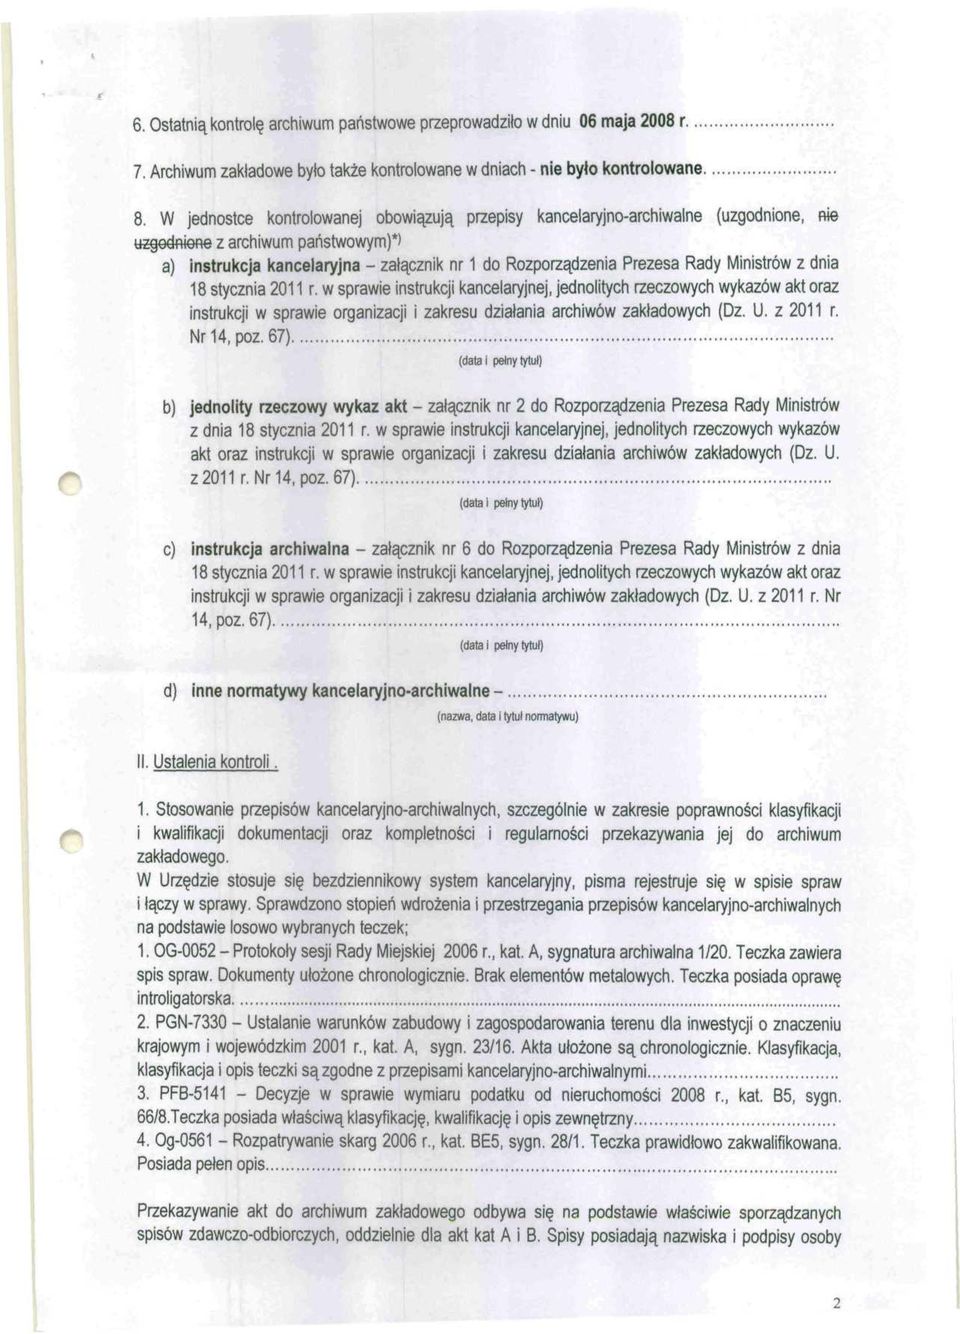 Ministrów z dnia 18 stycznia 2011 r. w sprawie instrukcji kancelaryjnej, jednolitych rzeczowych wykazów akt oraz instrukcji w sprawie organizacji i zakresu działania archiwów zakładowych (Dz. U.